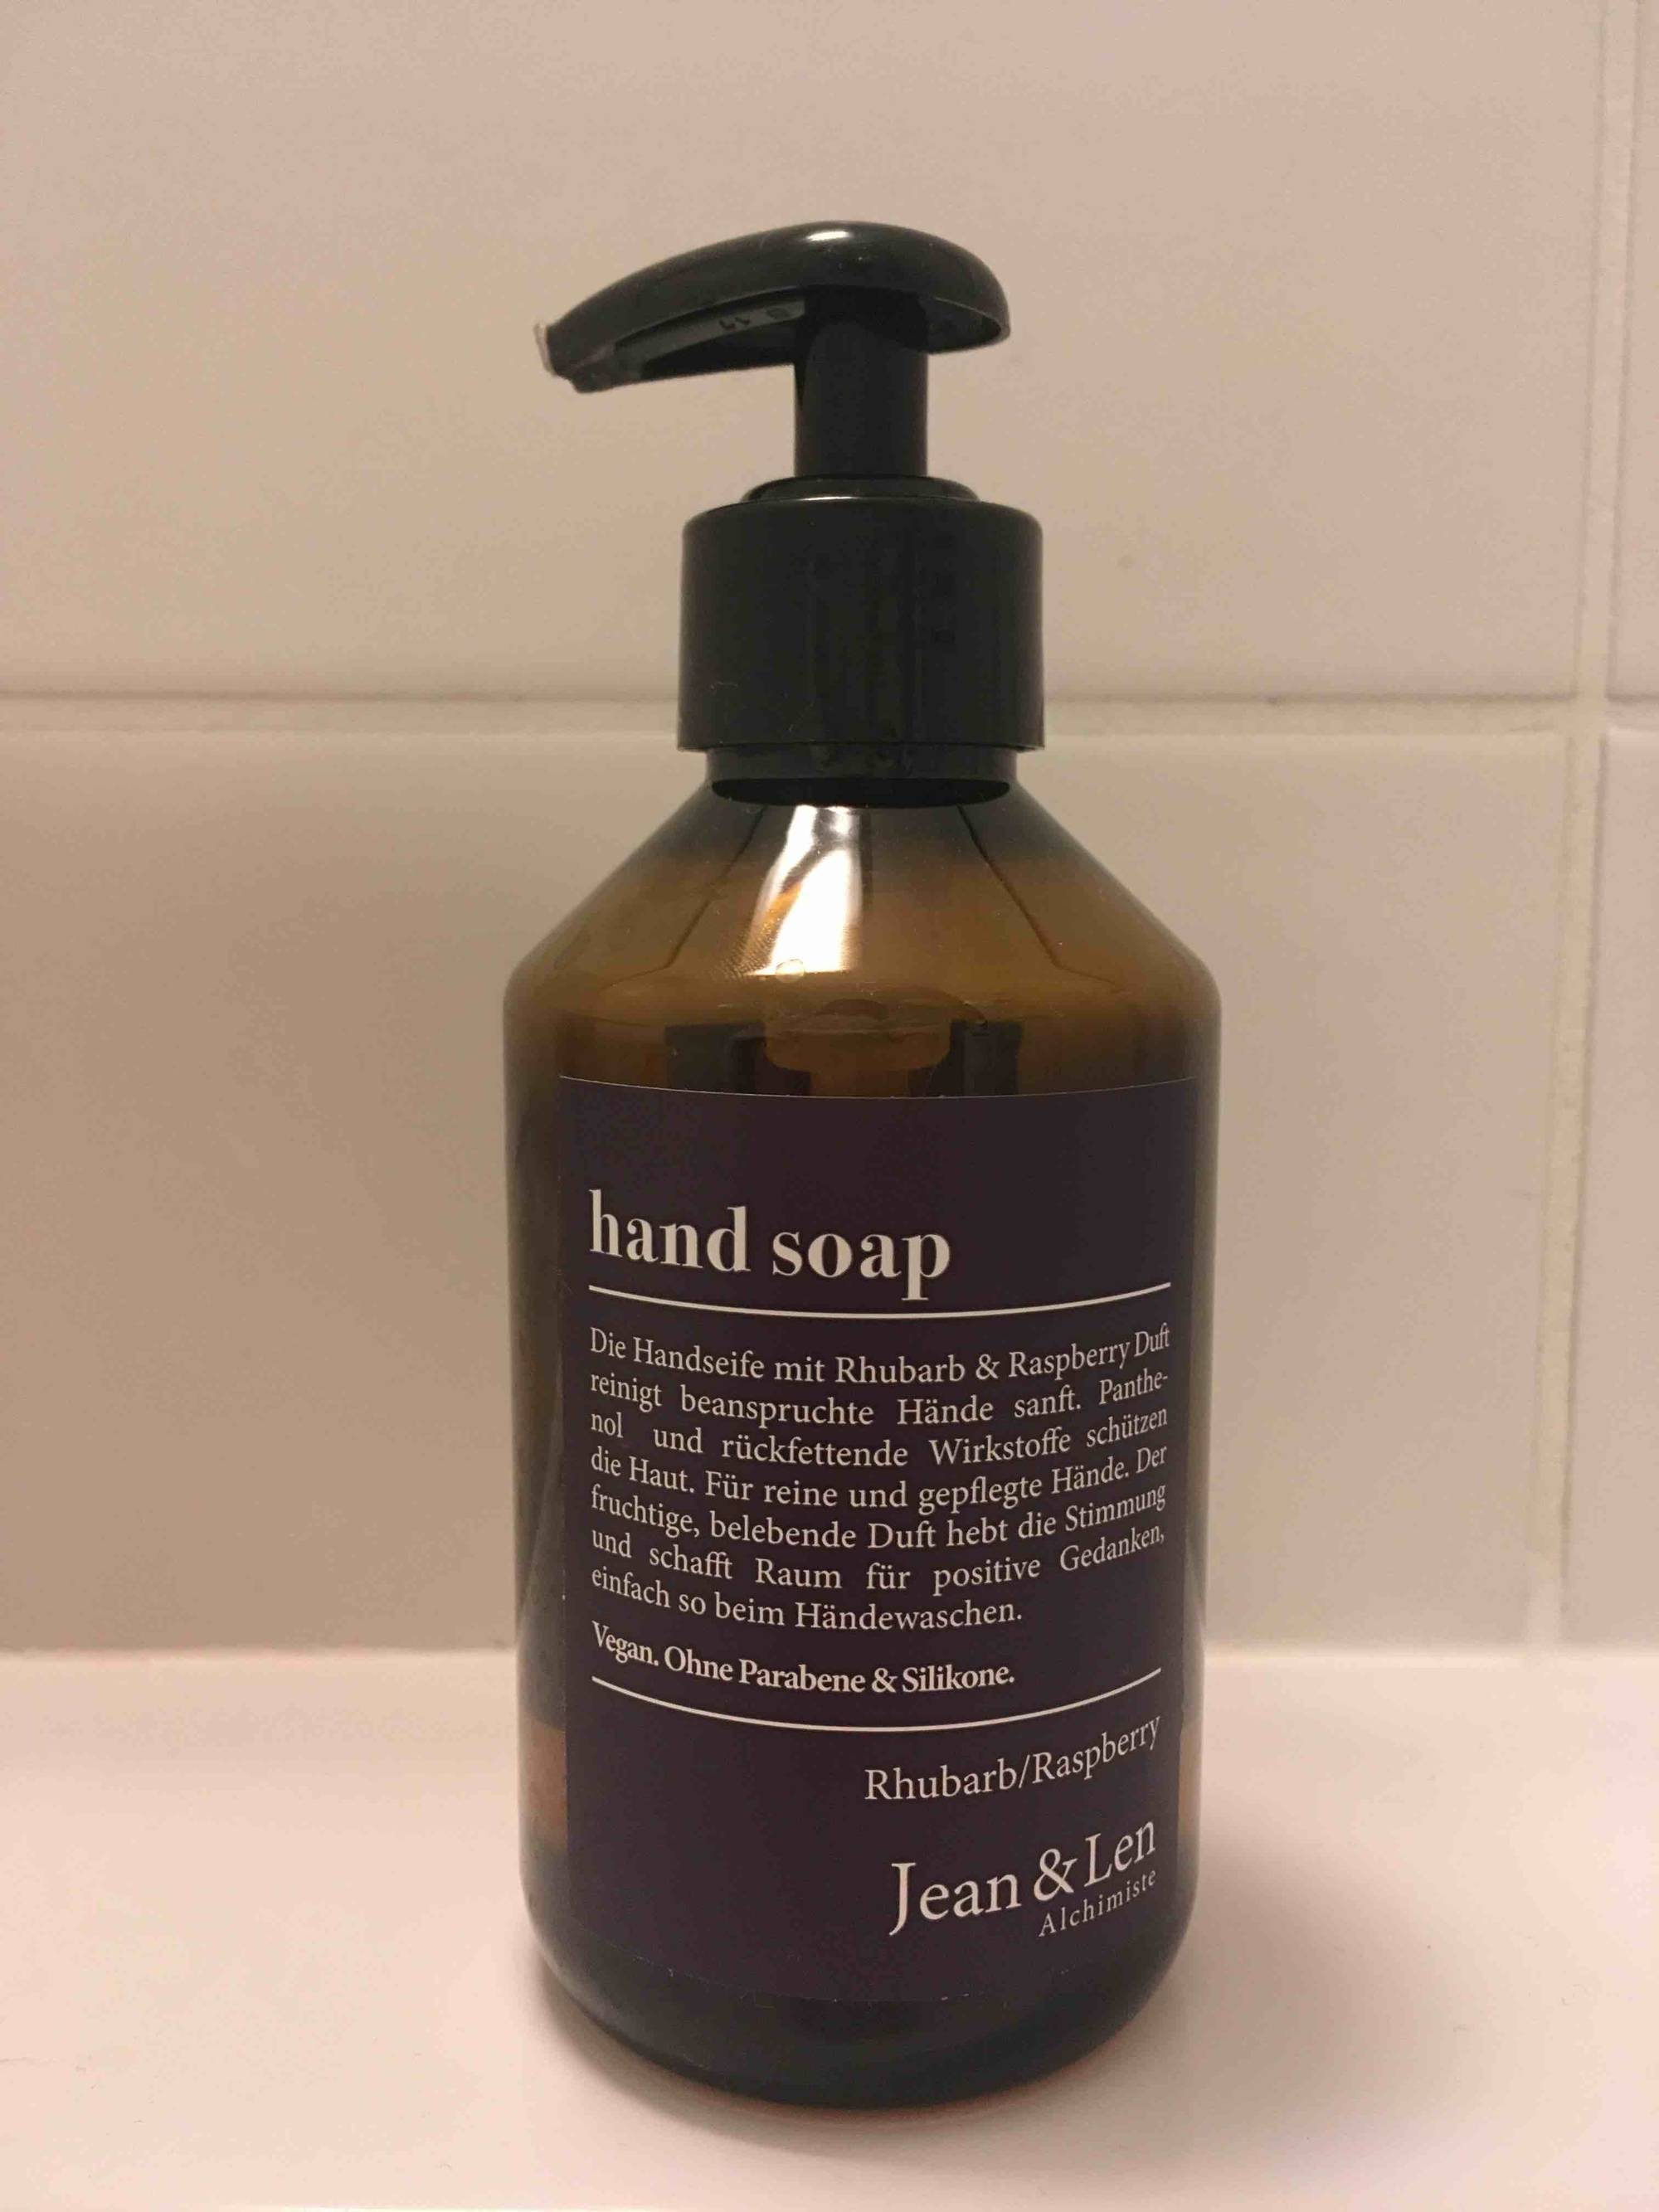 JEAN & LEN - Hand soap